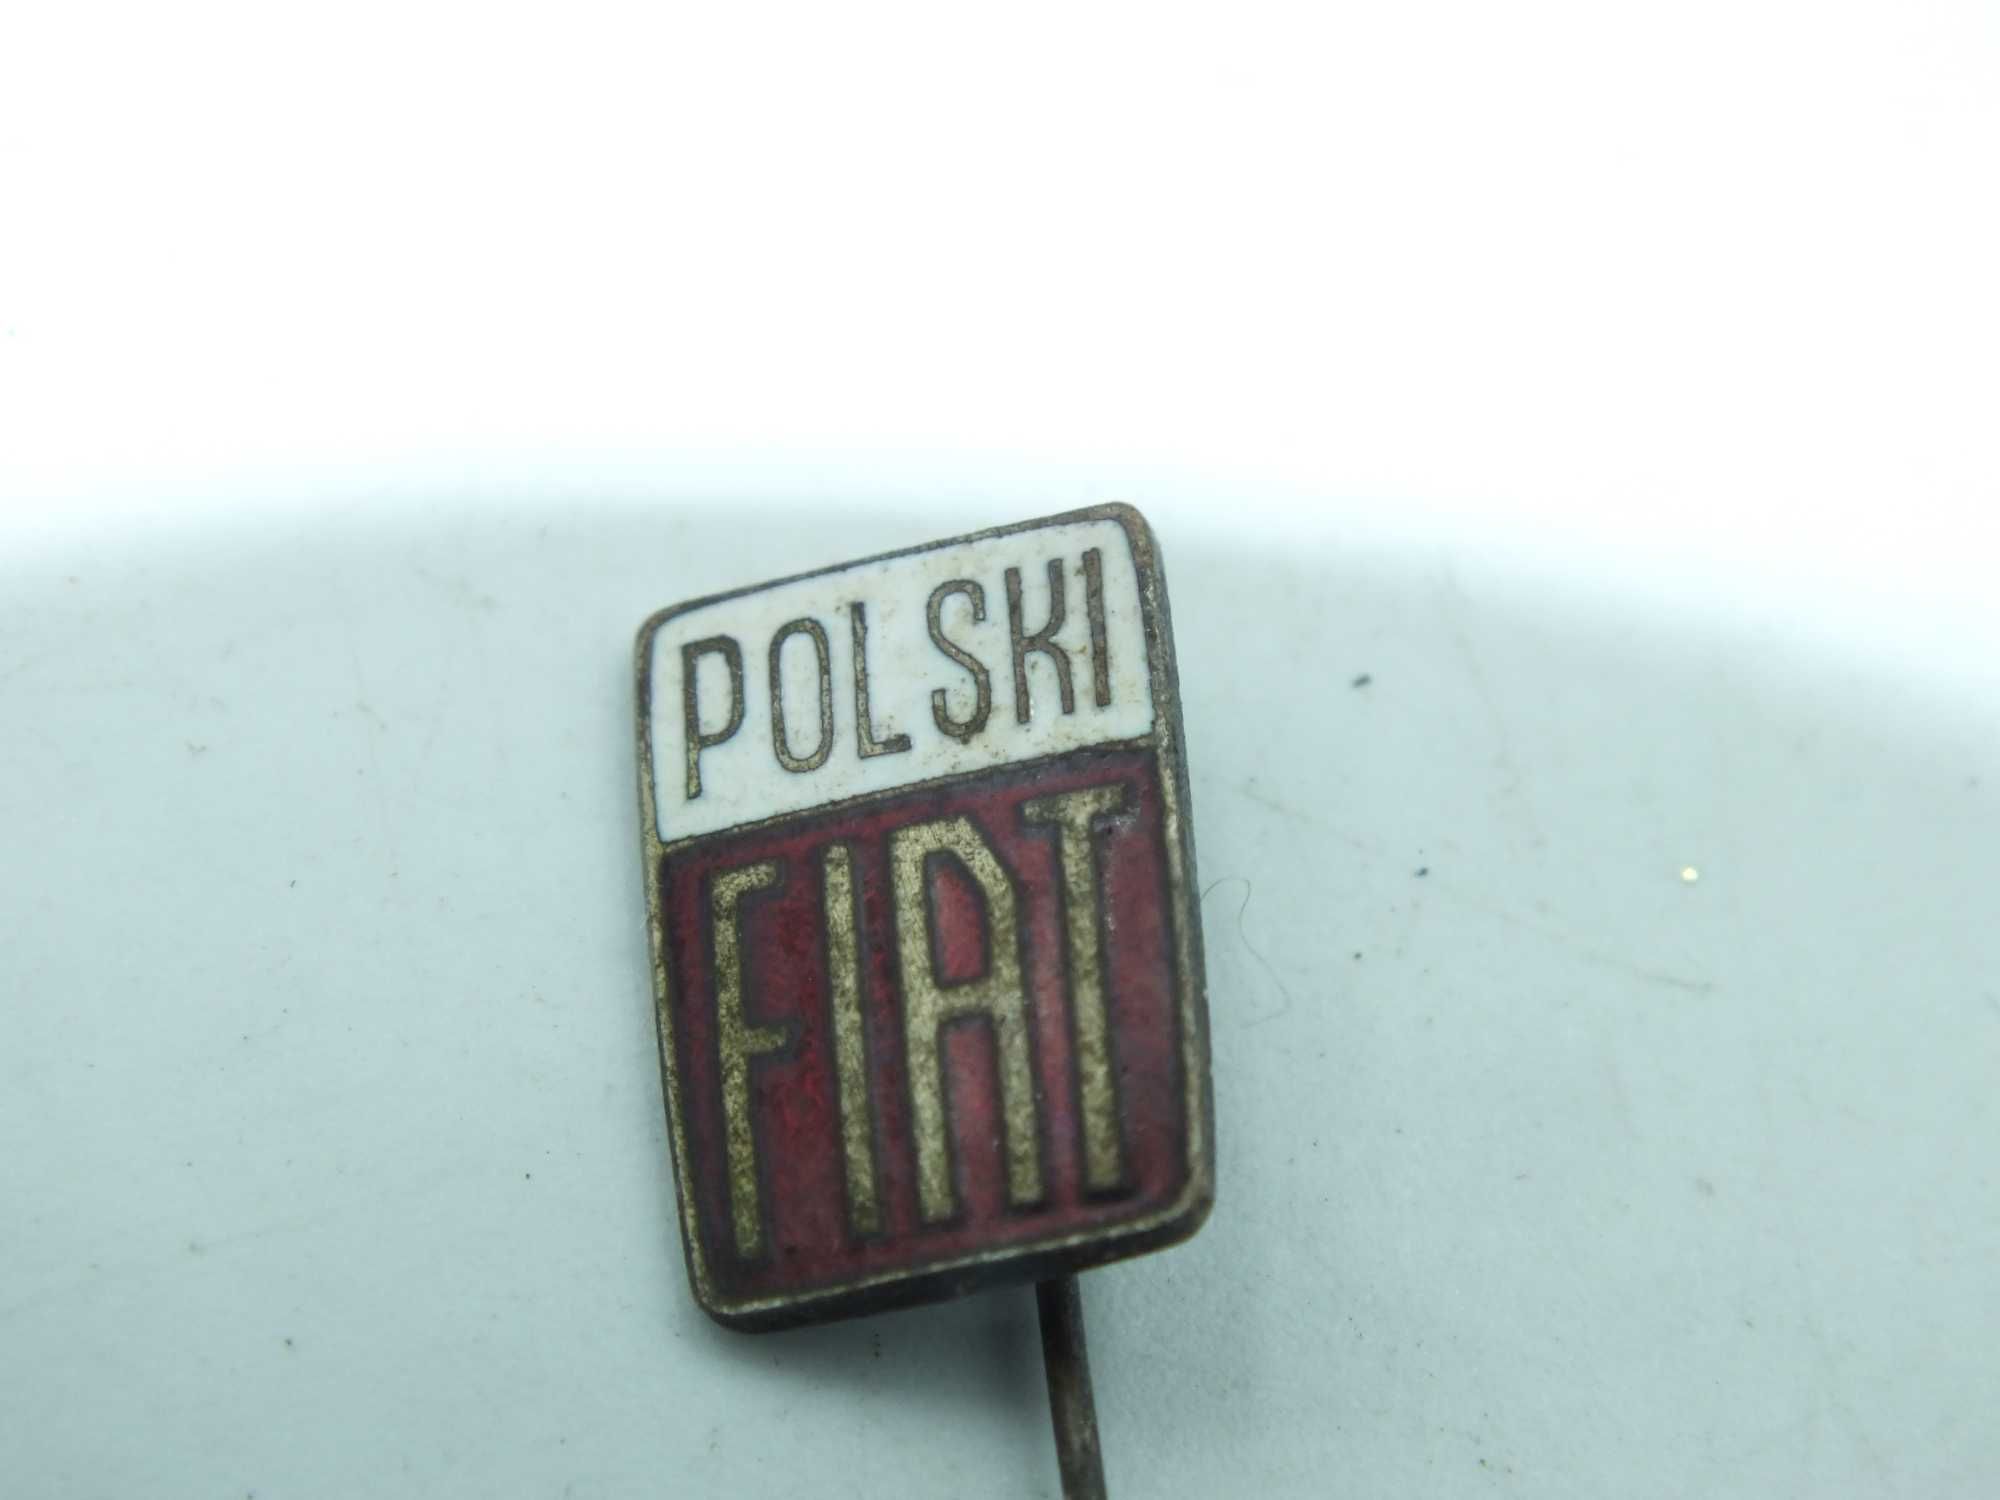 Znaczek wpinka porcelanka POLSKI FIAT metal